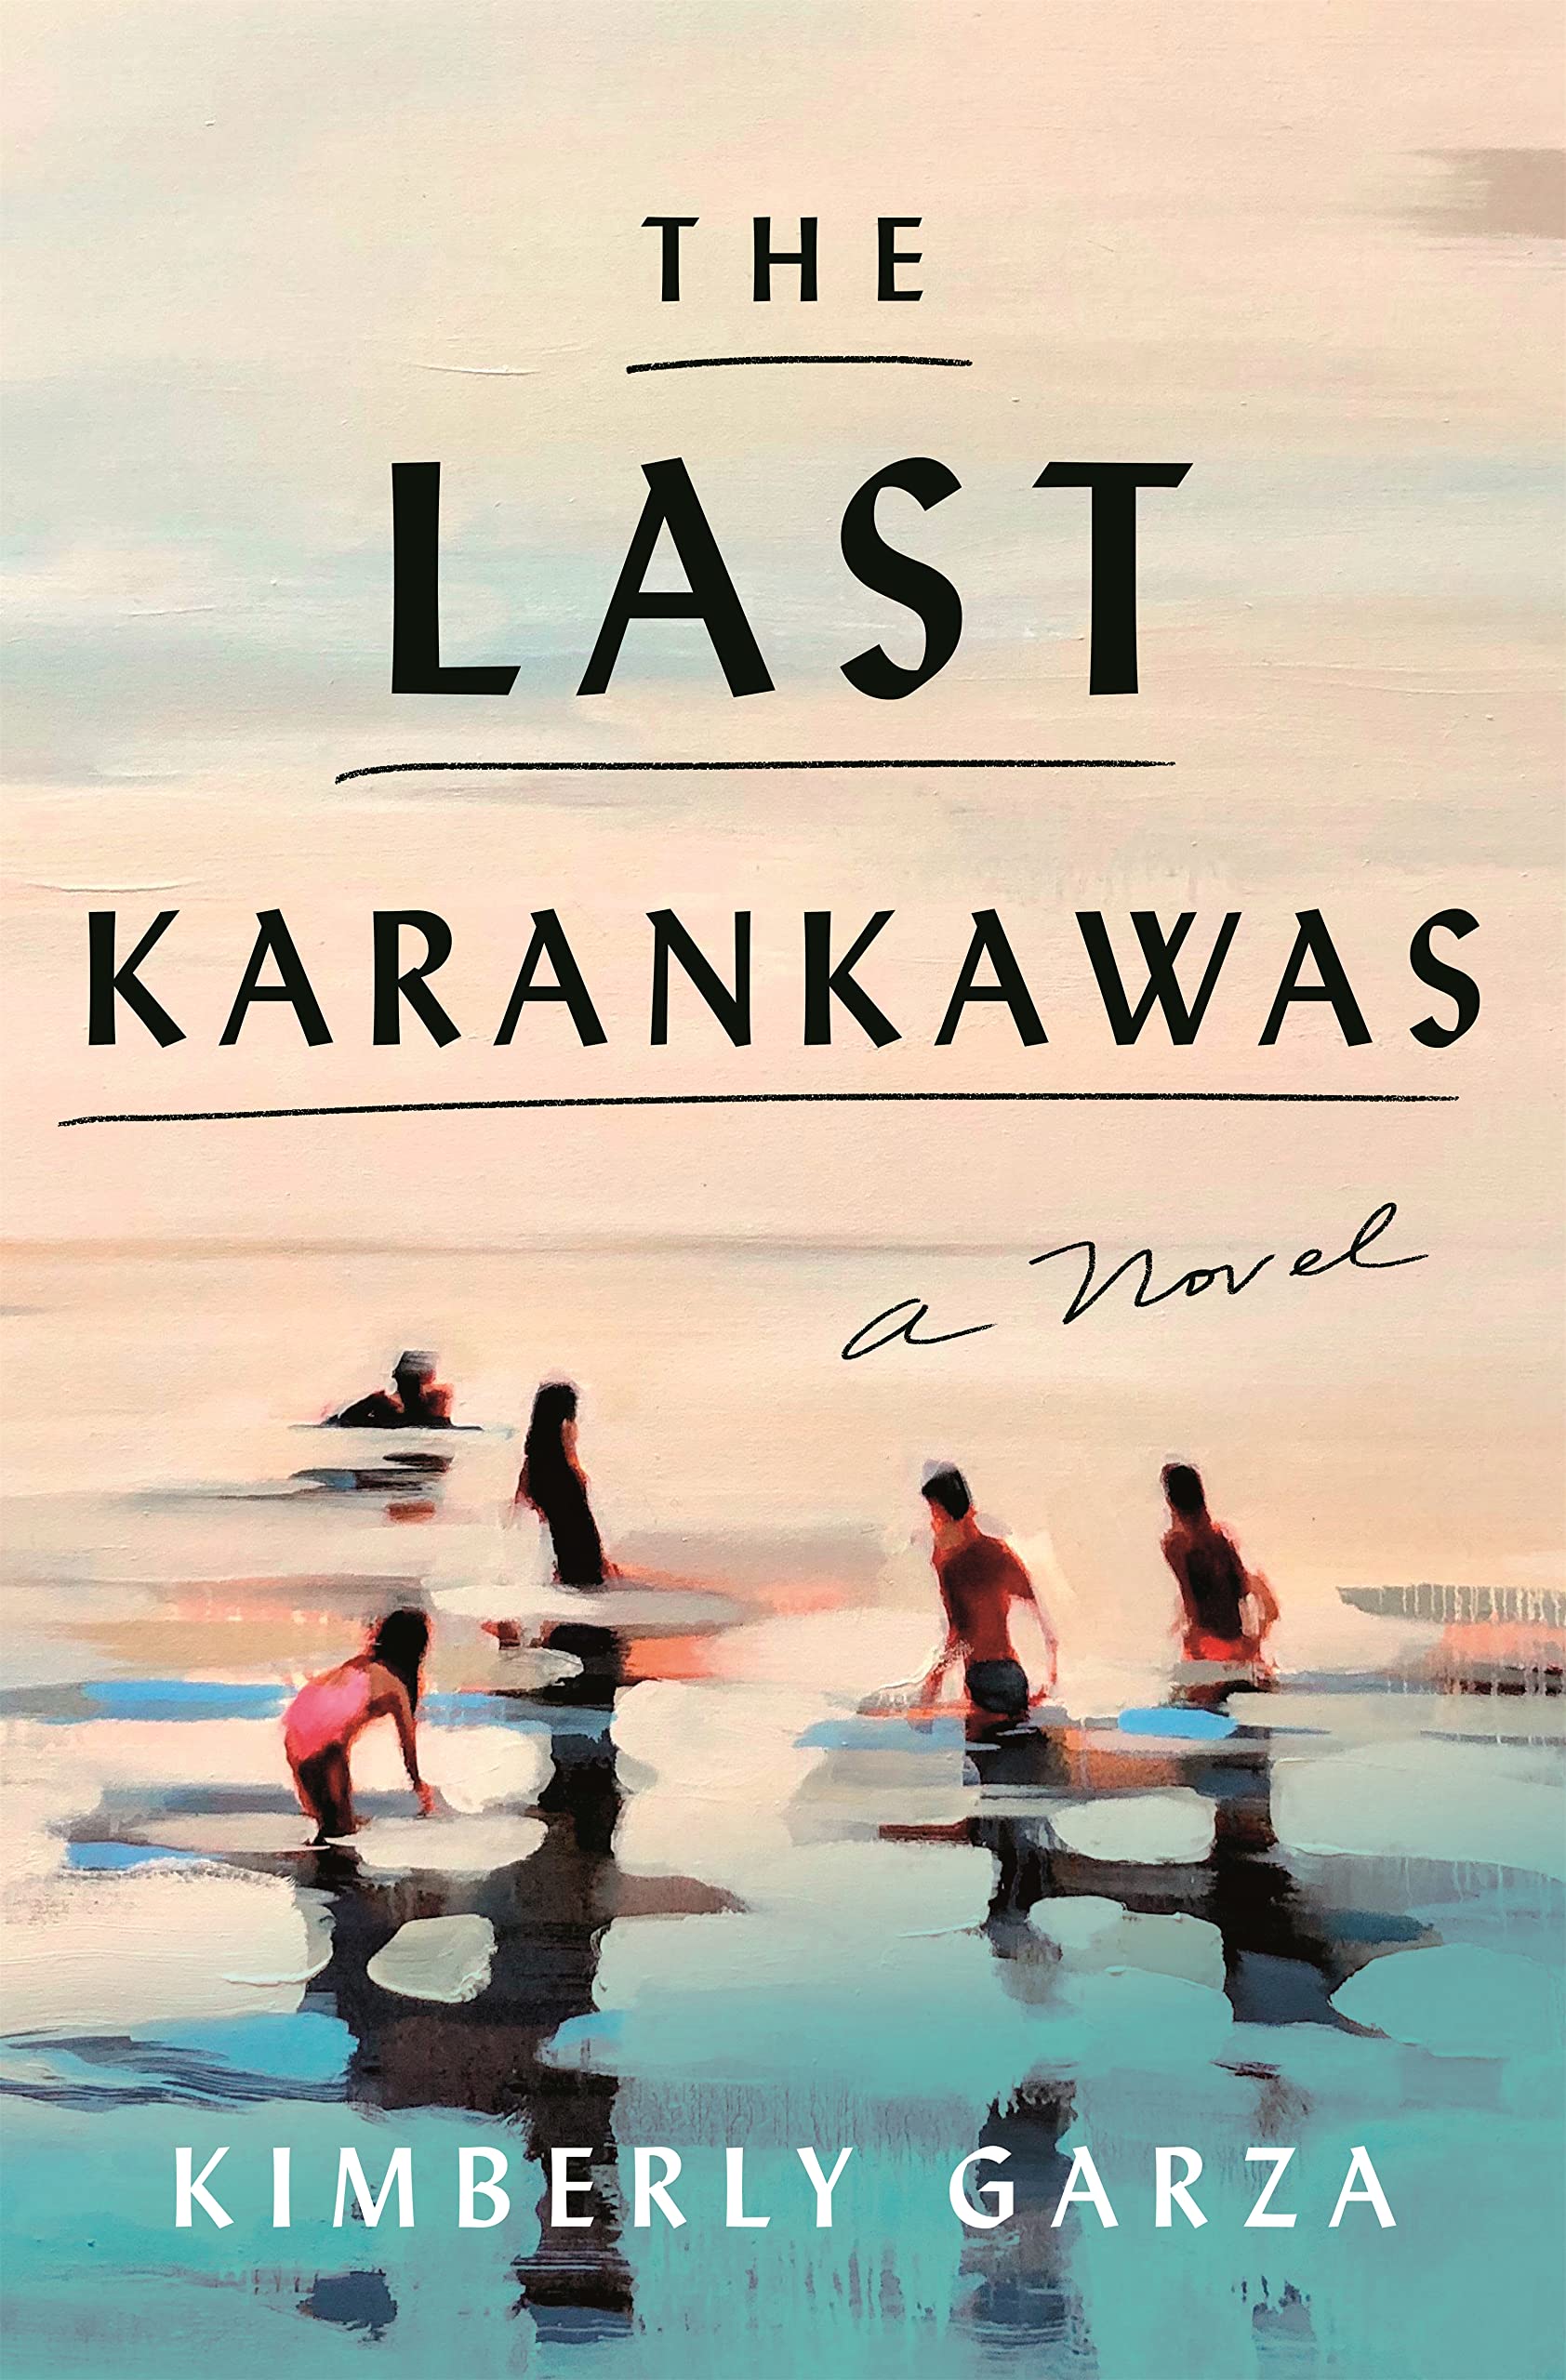 Image for "The Last Karankawas"